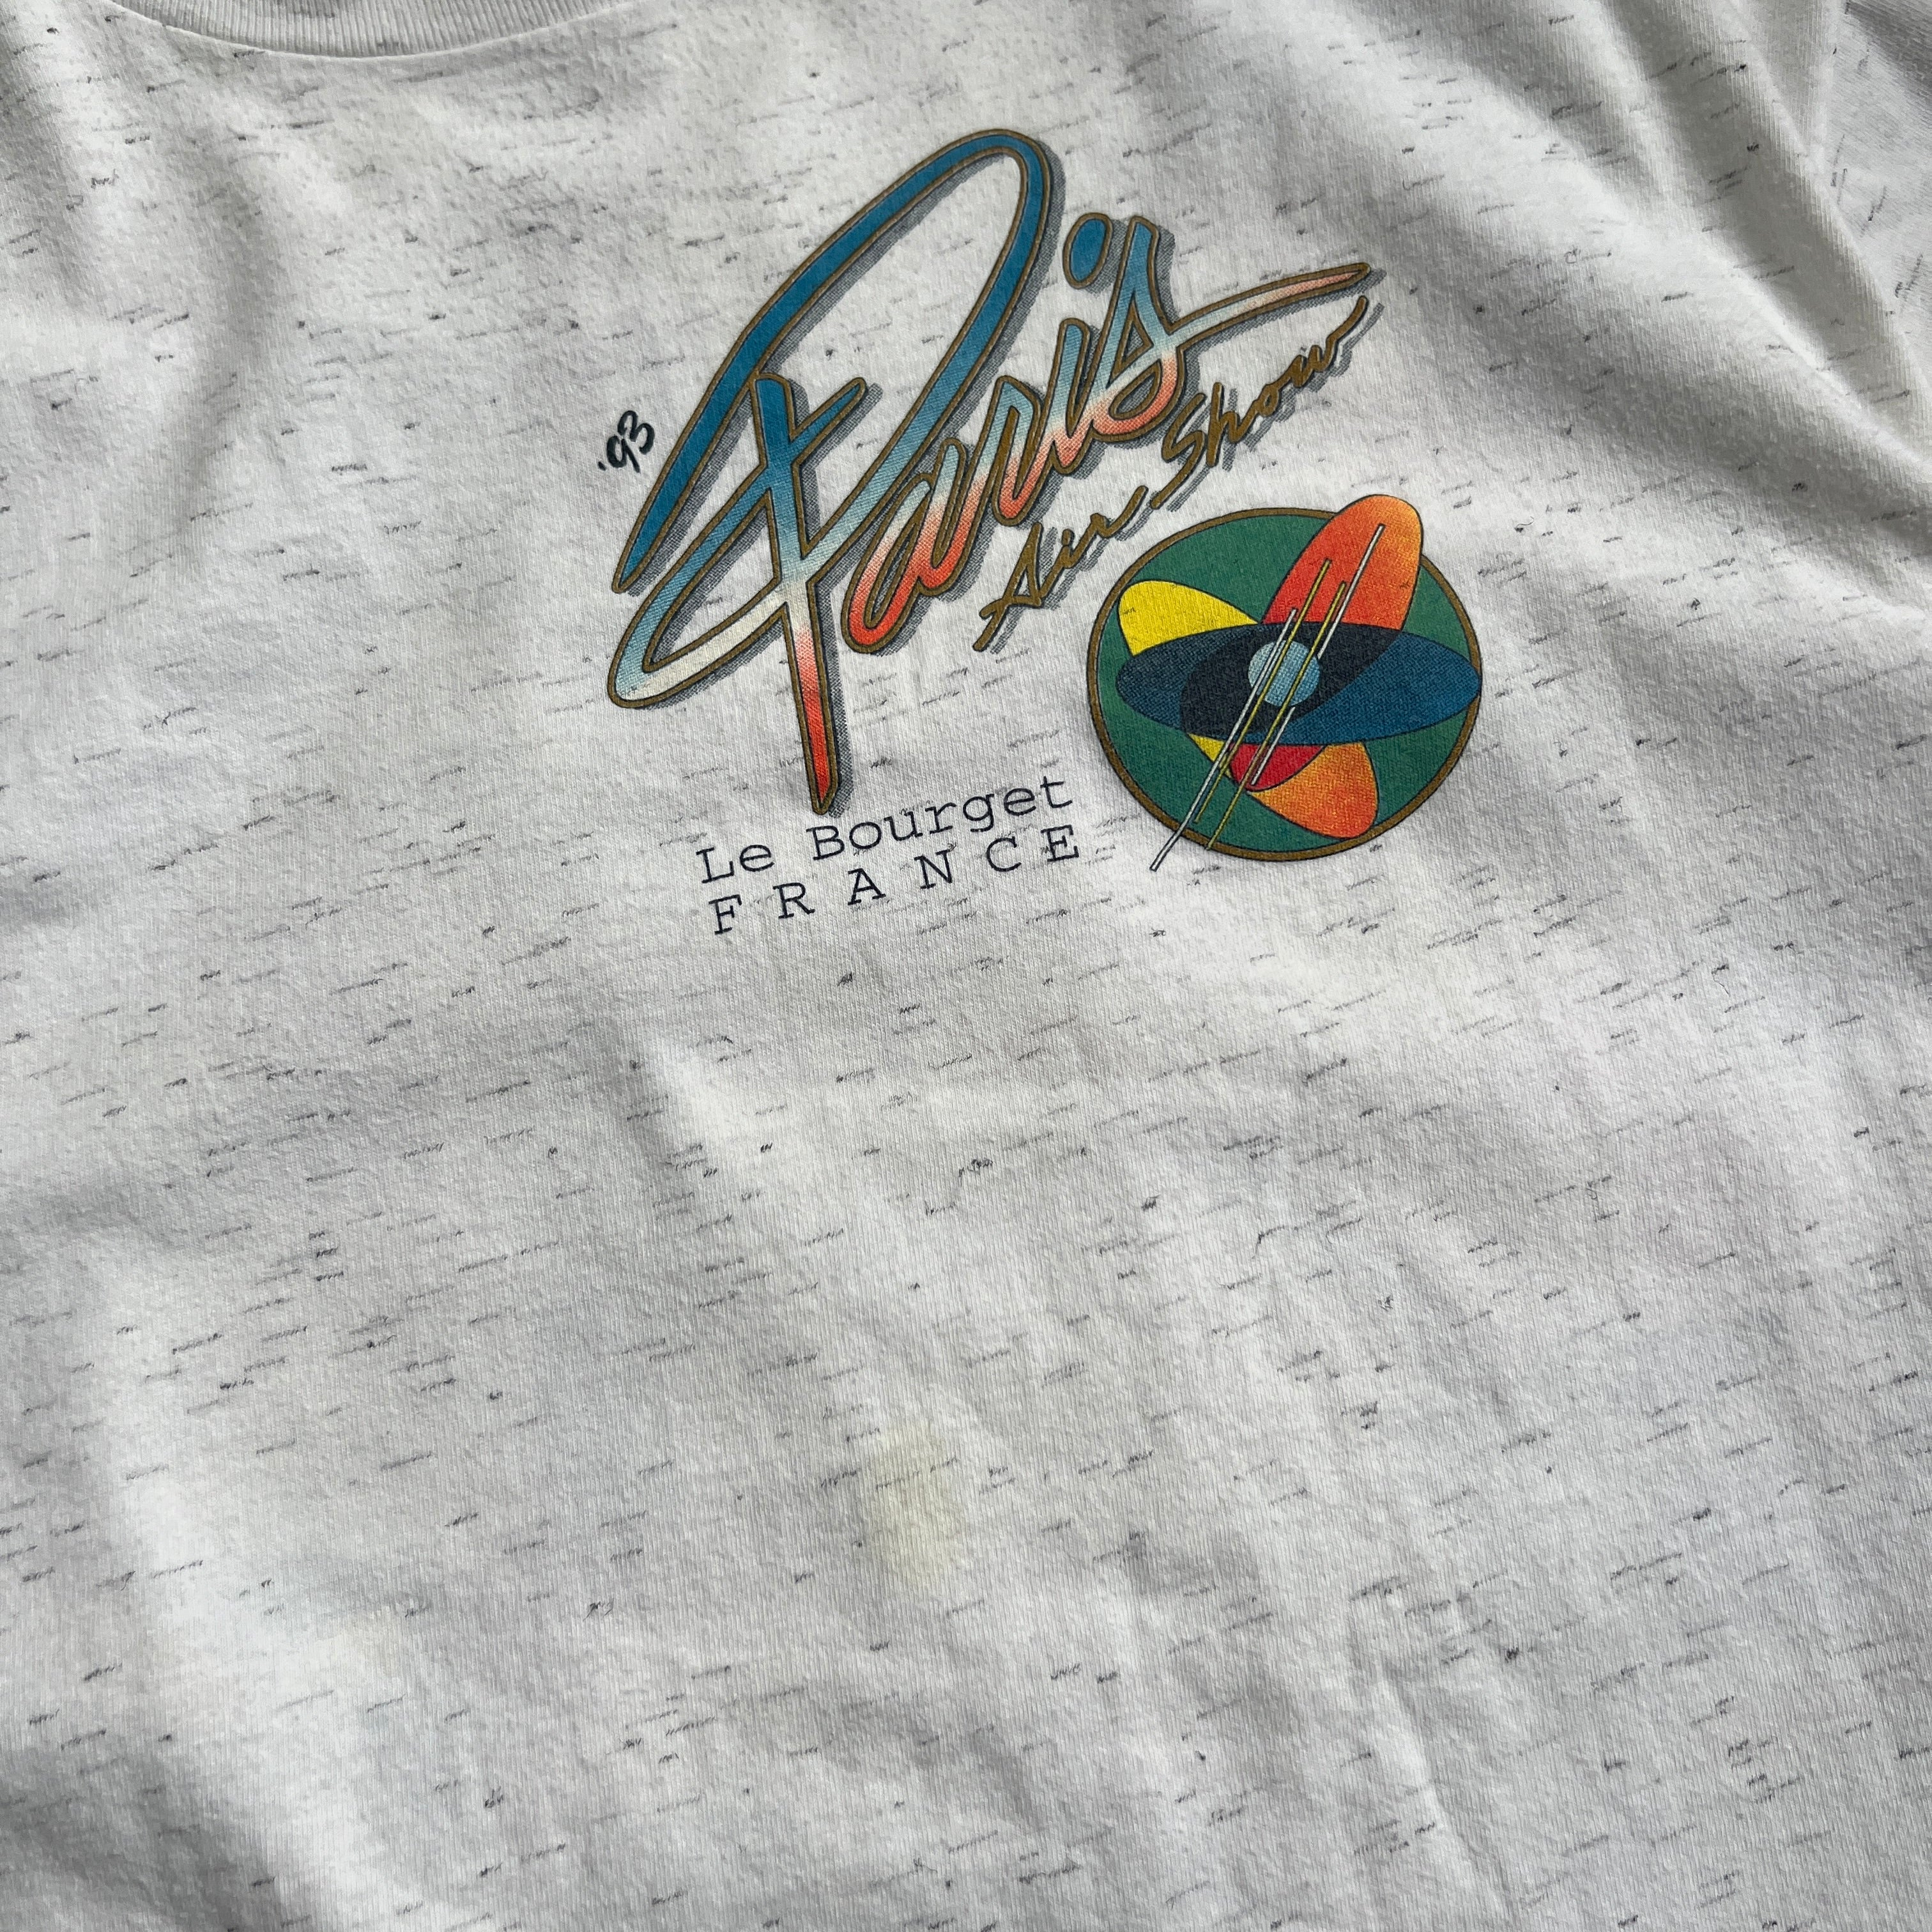 1993 Paris France T-Shirt Size XL